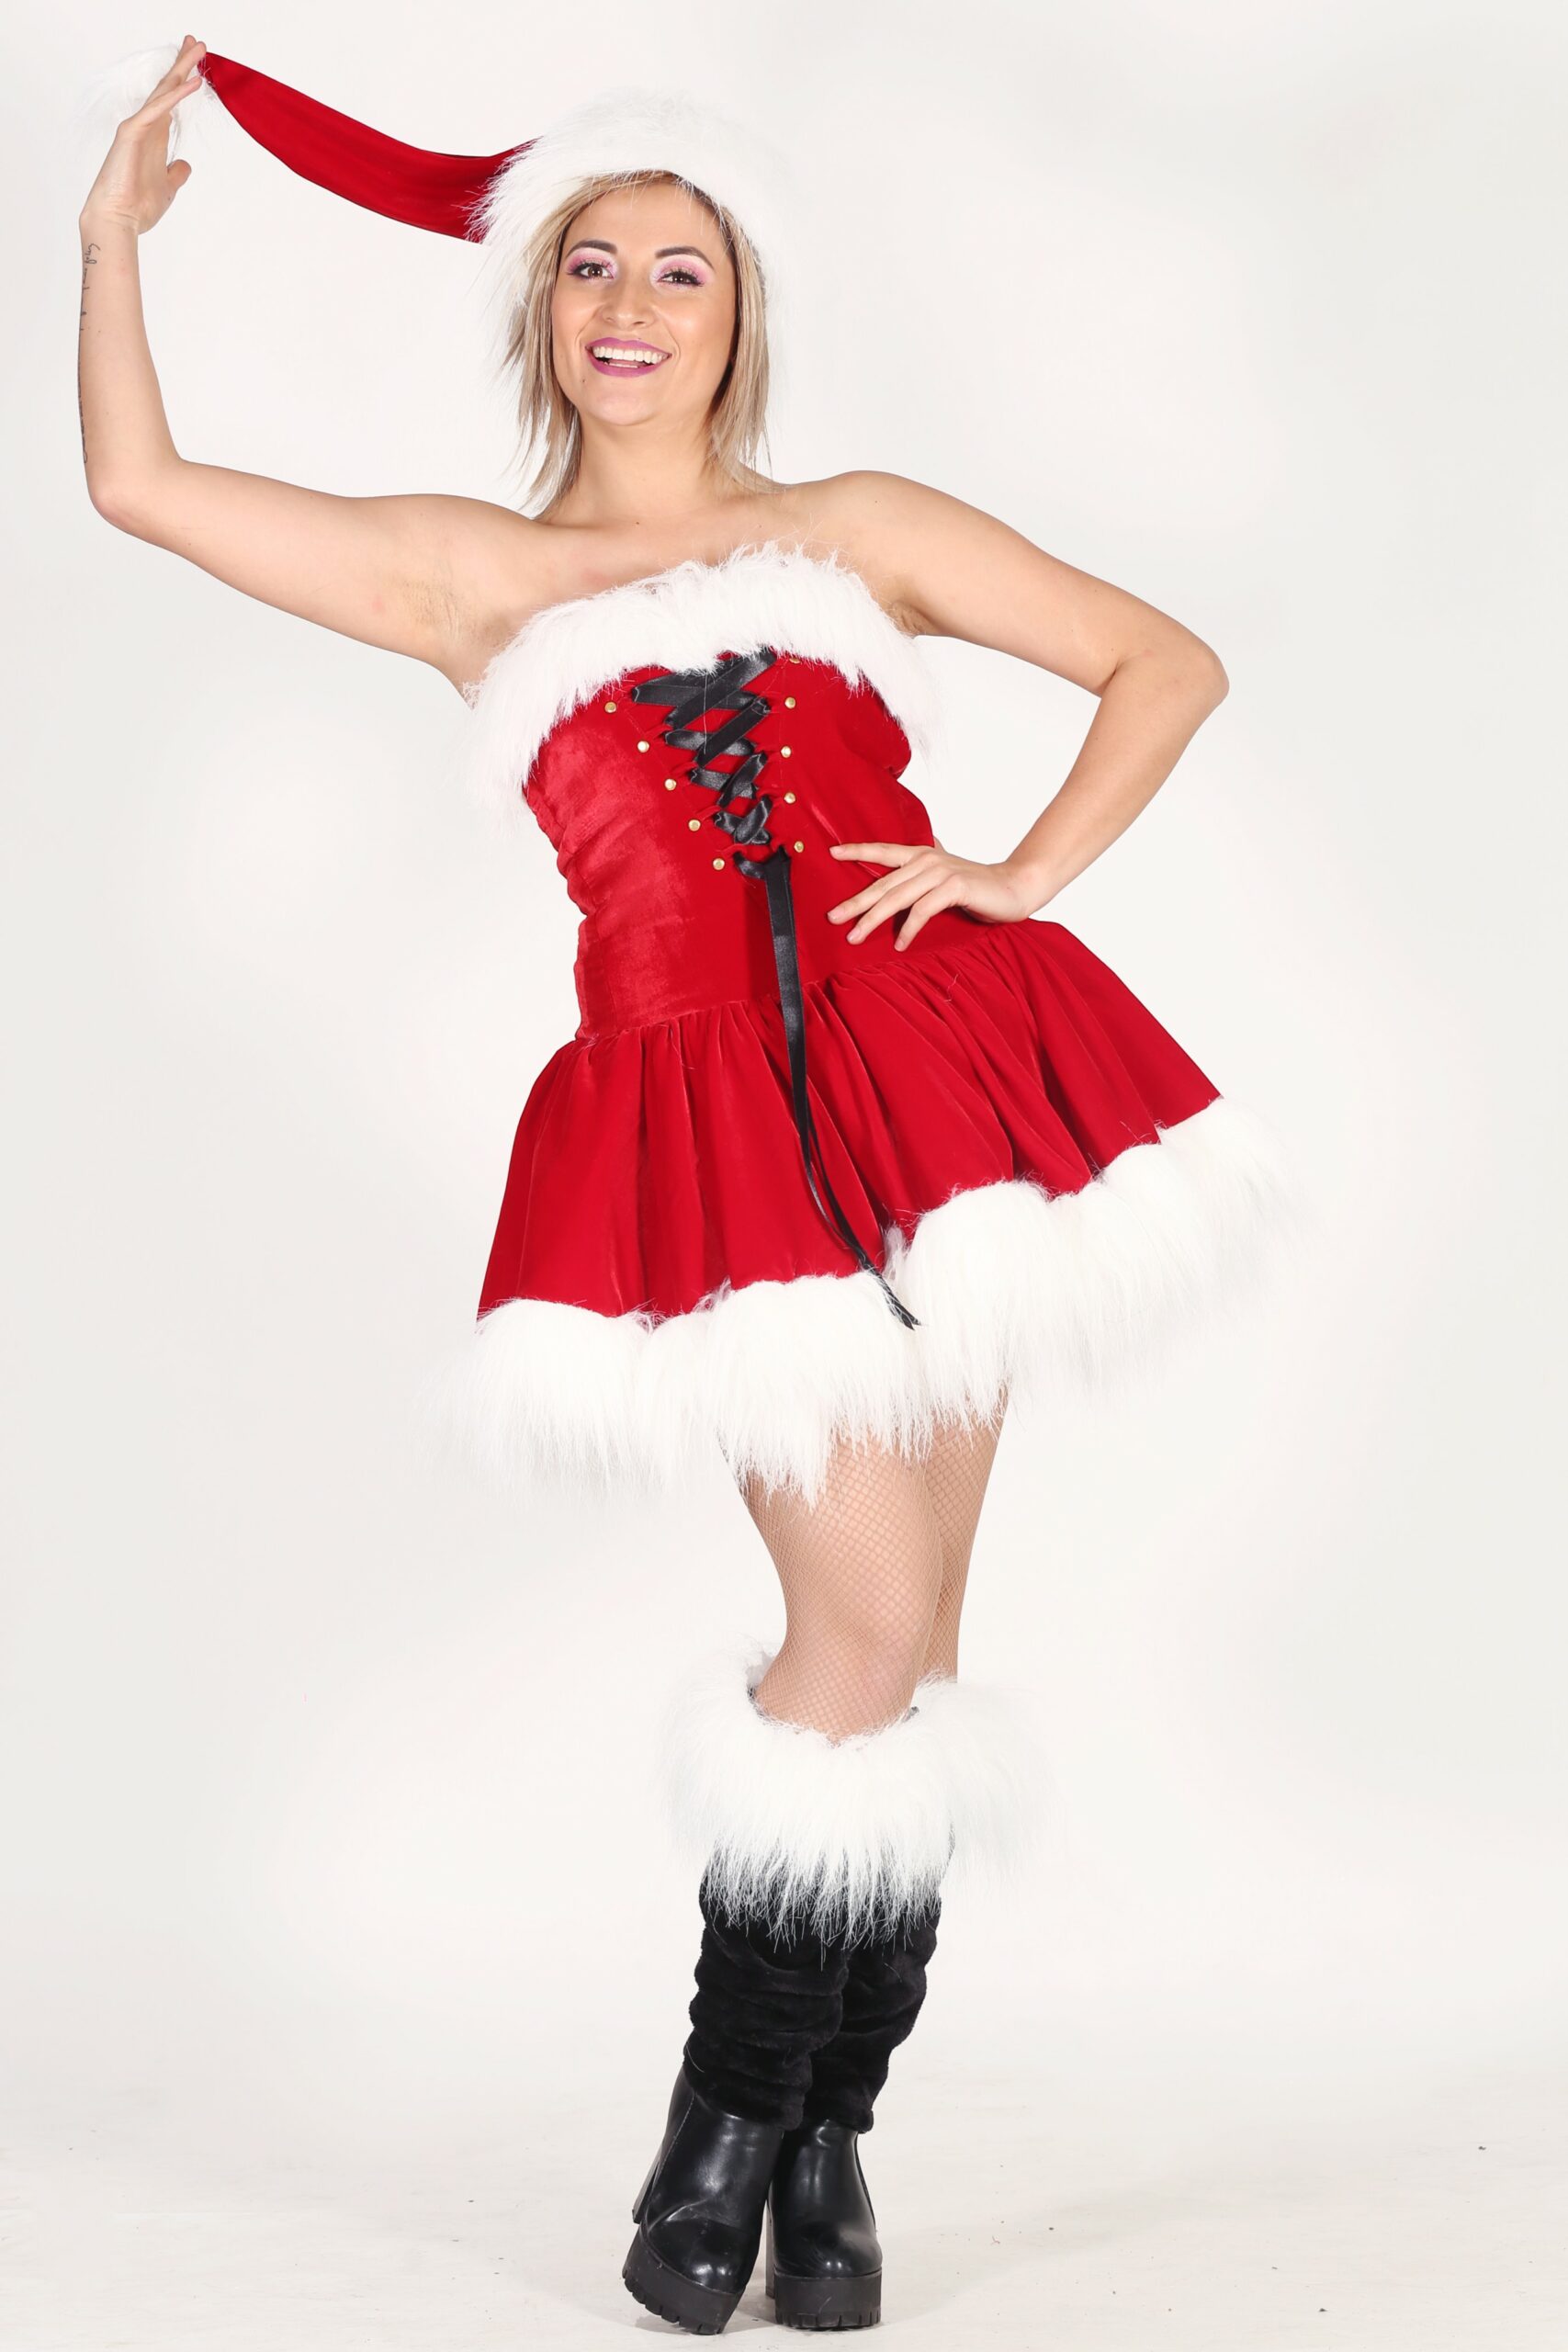 Miss Santa Claus Costume